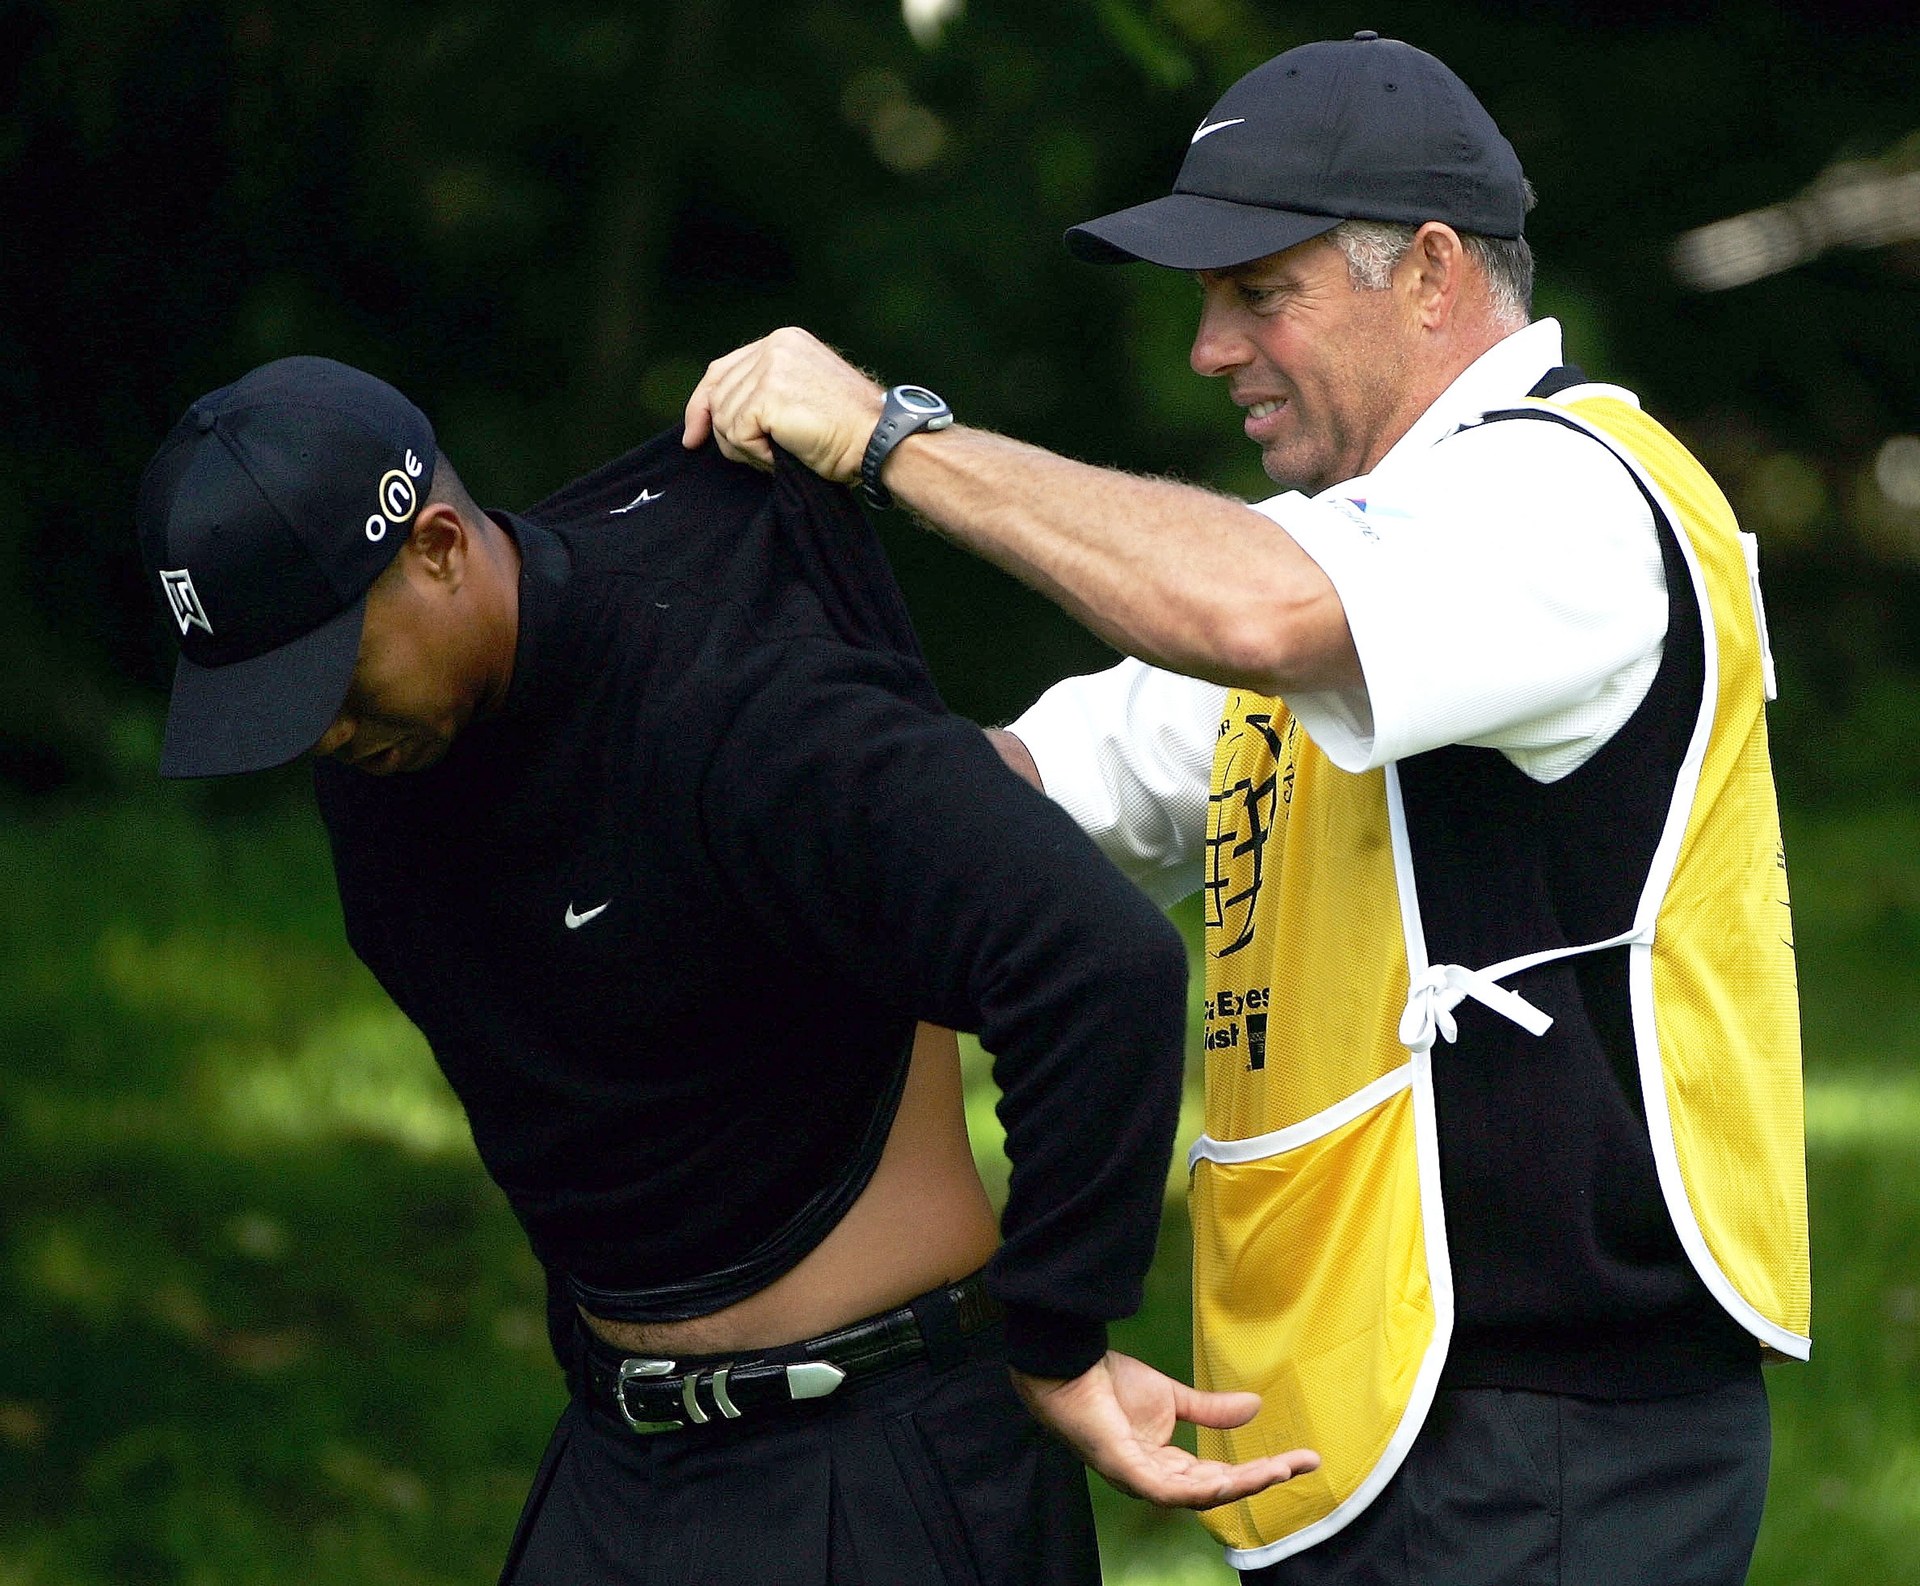 Nghiên cứu cho thấy golfer dễ gặp chấn thương lưng với kiểu swing hiện đại